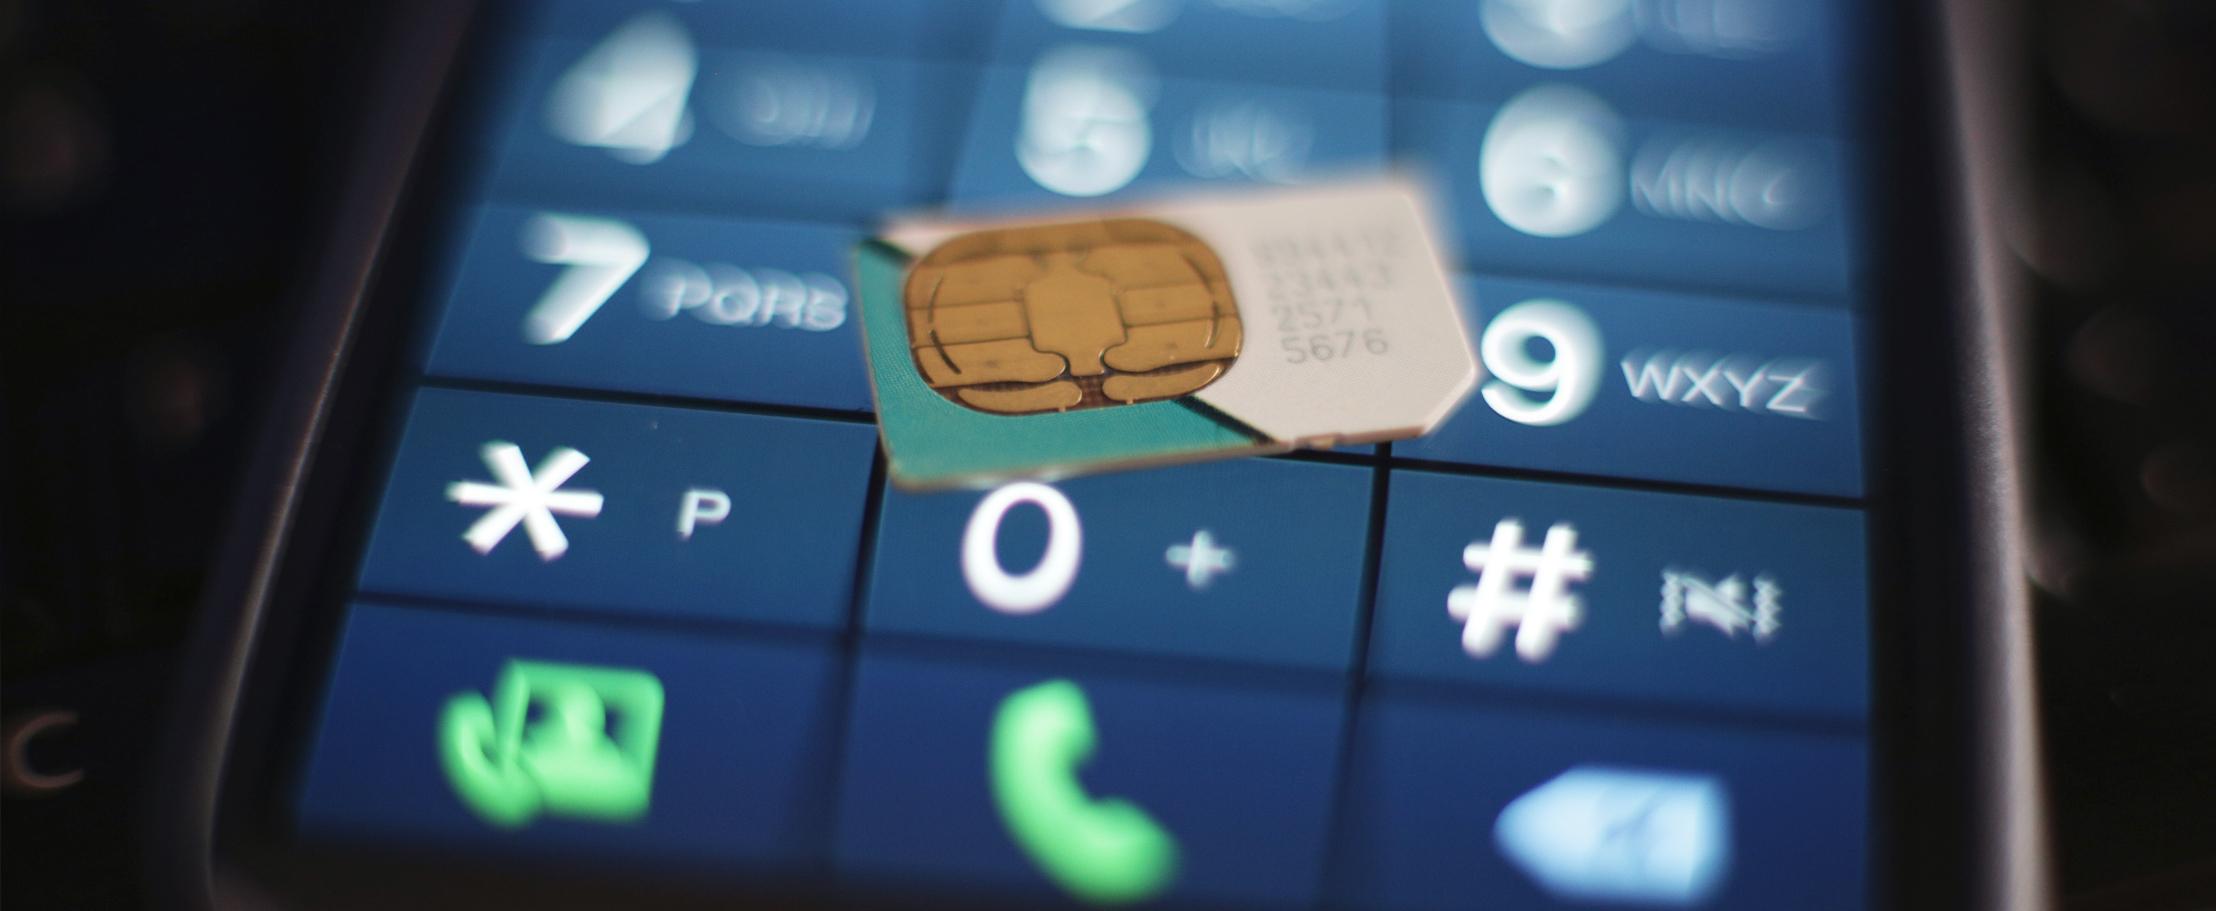 Плохое качество связи заставляет людей покупать больше SIM-карт